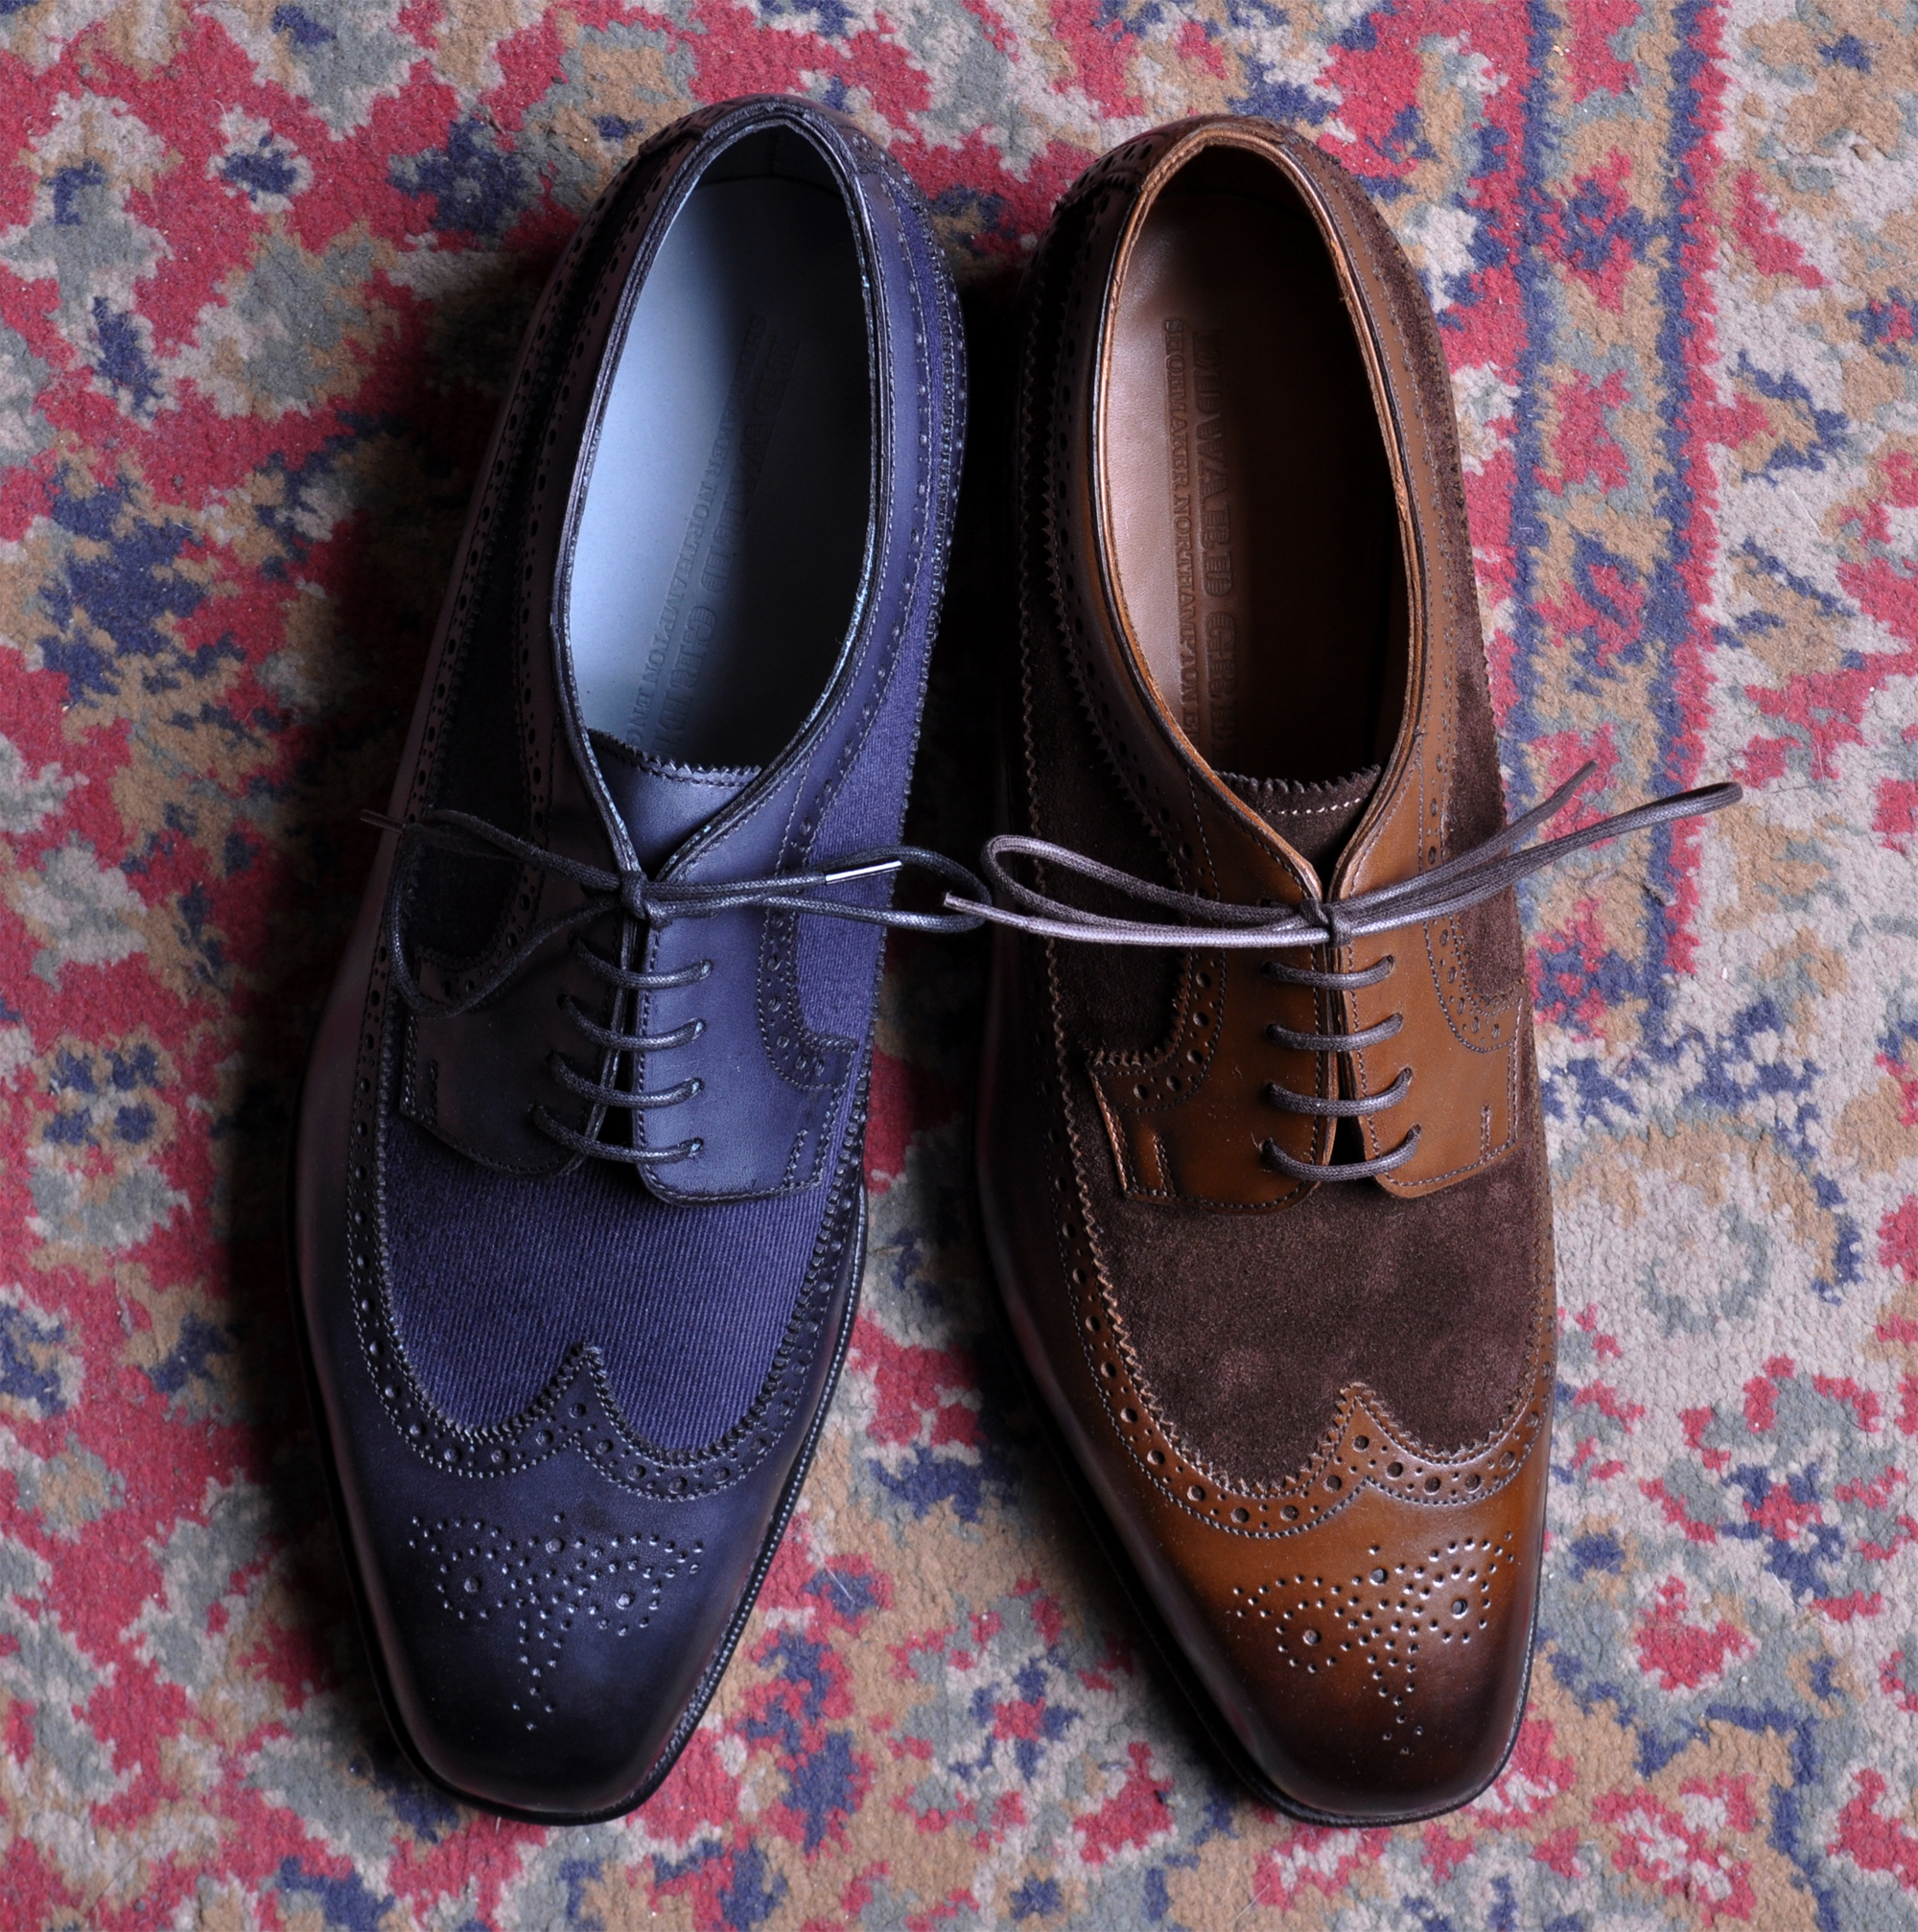 Unipair - Gentlemen's Shoe Boutique - Official Affiliate Thread | Page ...